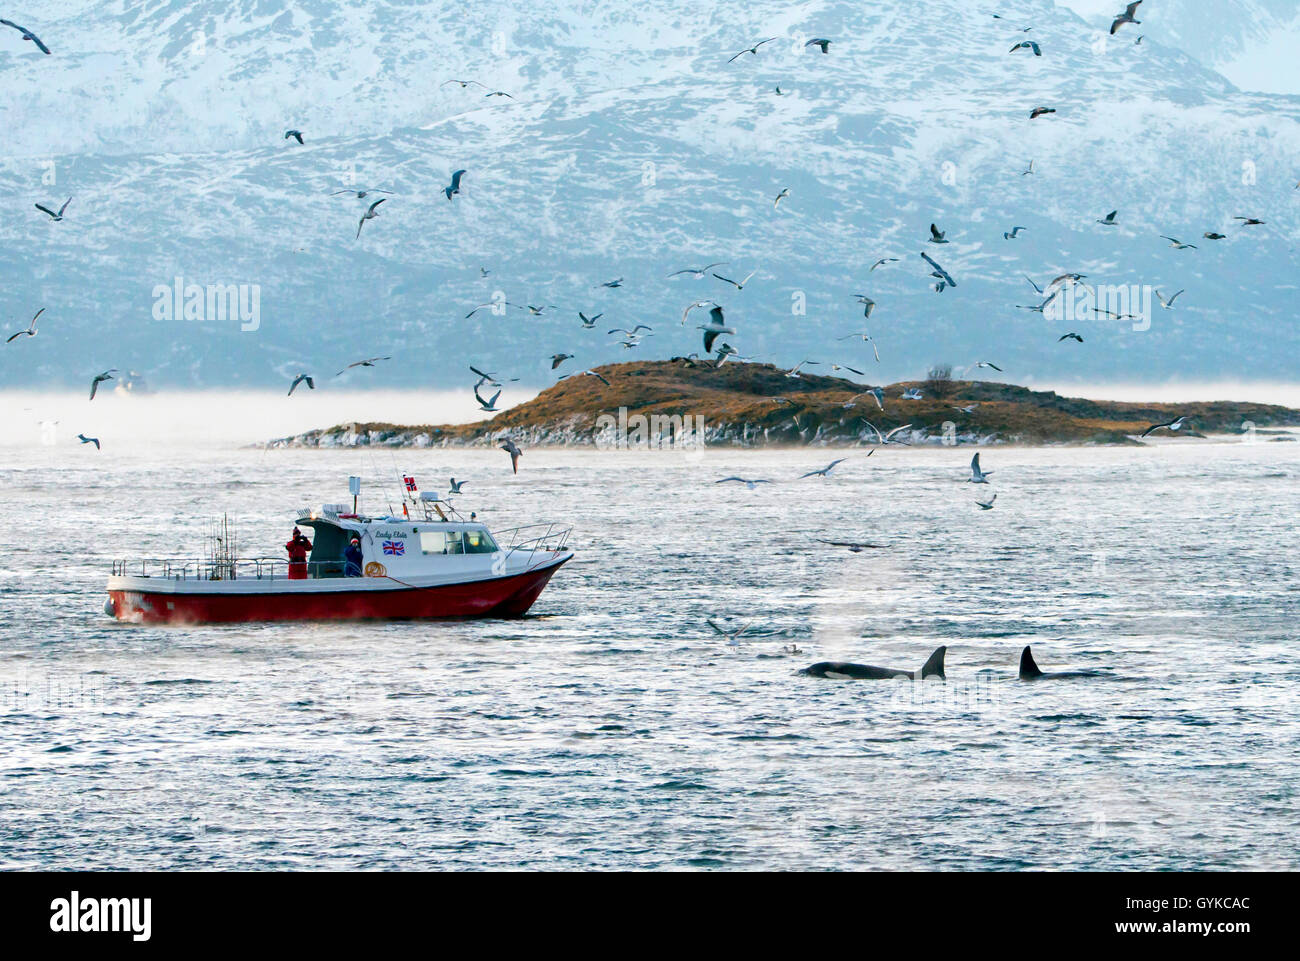 Orca, grand orque, grampus (Orcinus orca), l'observation des baleines dans le nord de la Norvège, la Norvège, Troms, Kvaloeya Sommaroey, Banque D'Images